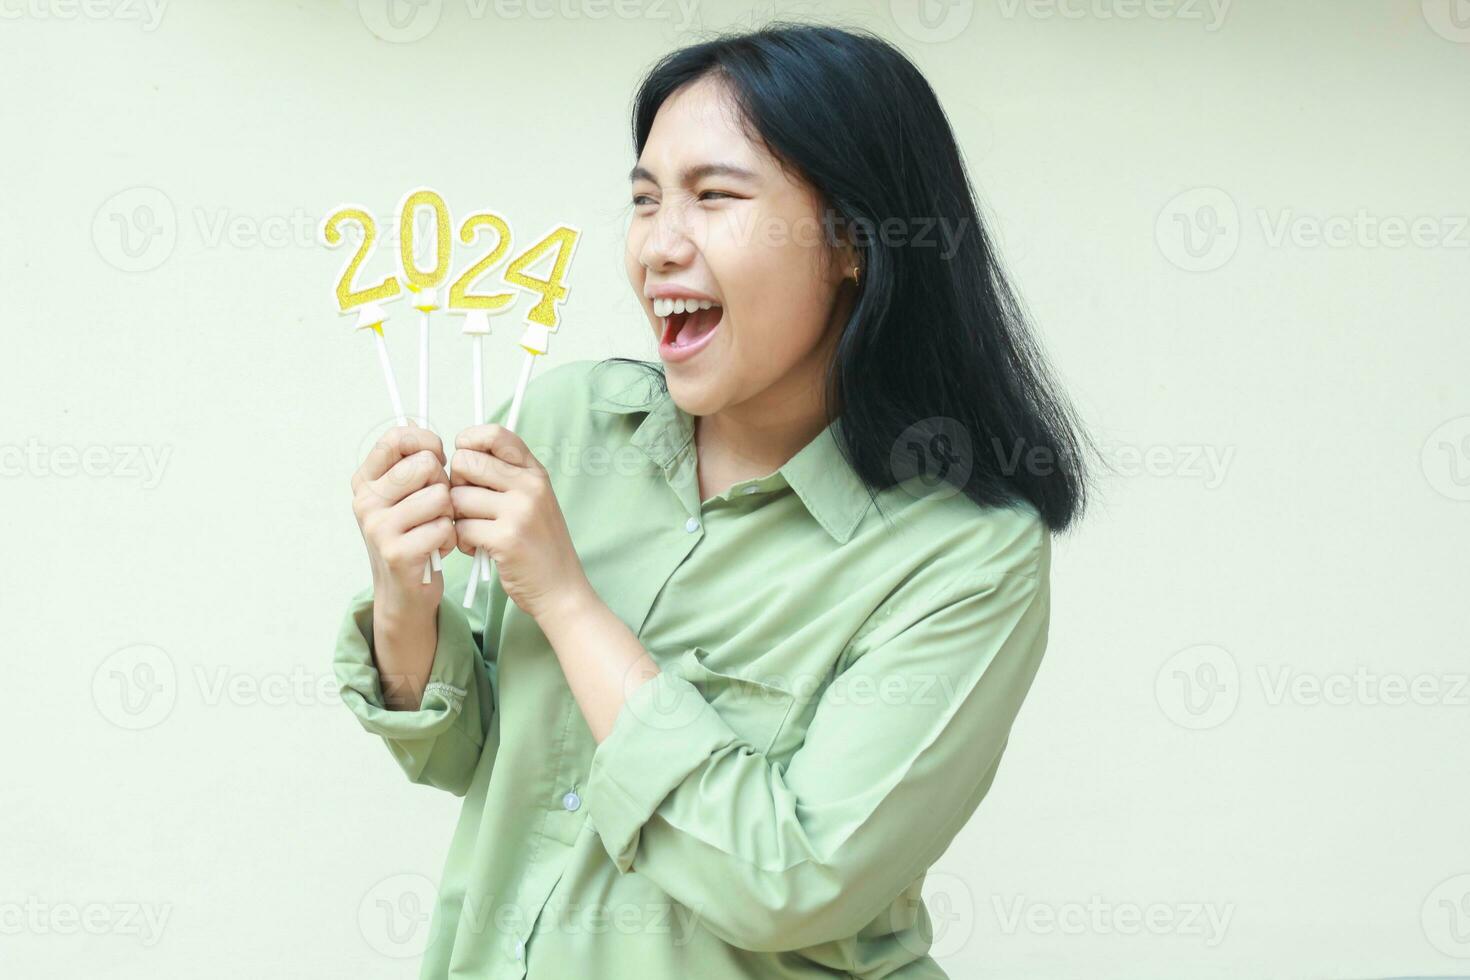 conmocionado asiático joven mujer hipster gritando mientras mirando aparte a 2024 número vela elevado en mano sostener vistiendo verde terminado Talla camisa casual, aislado terminado blanco, nuevo años víspera concepto foto